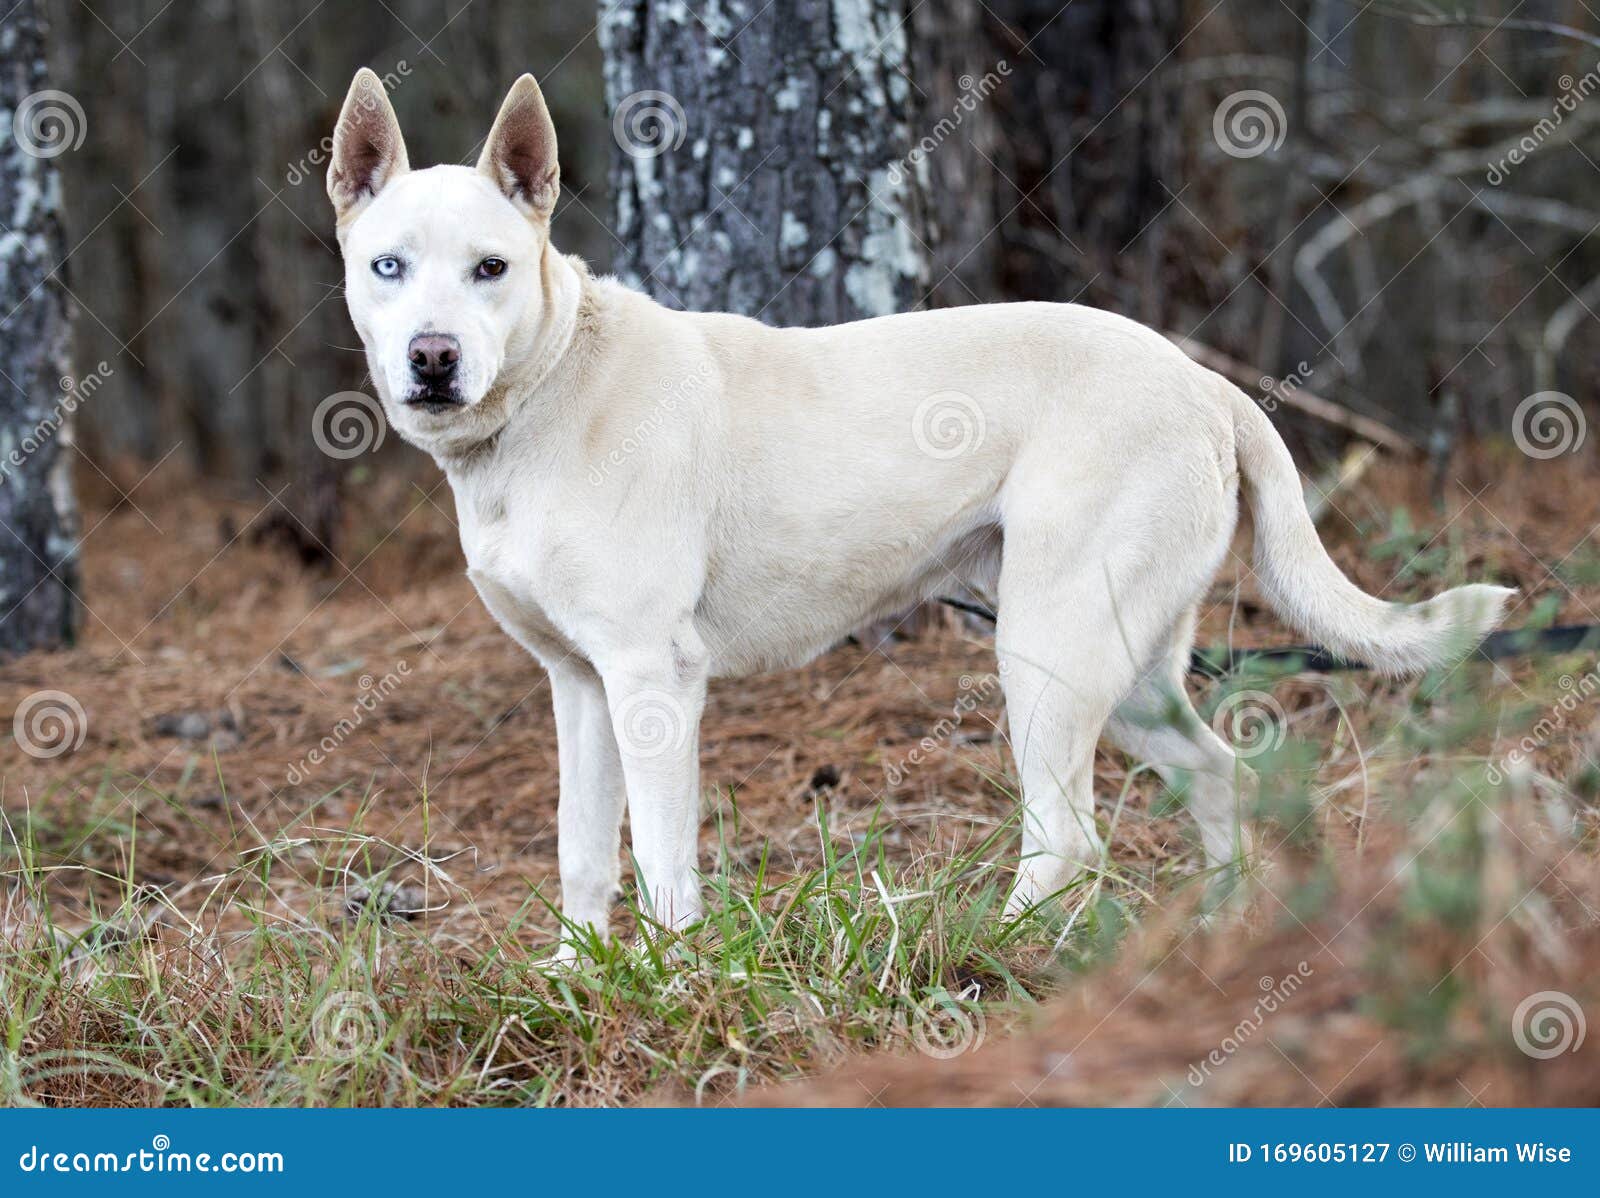 White Husky Mix Breed Dog with One Eye Stock - Image blue, 169605127